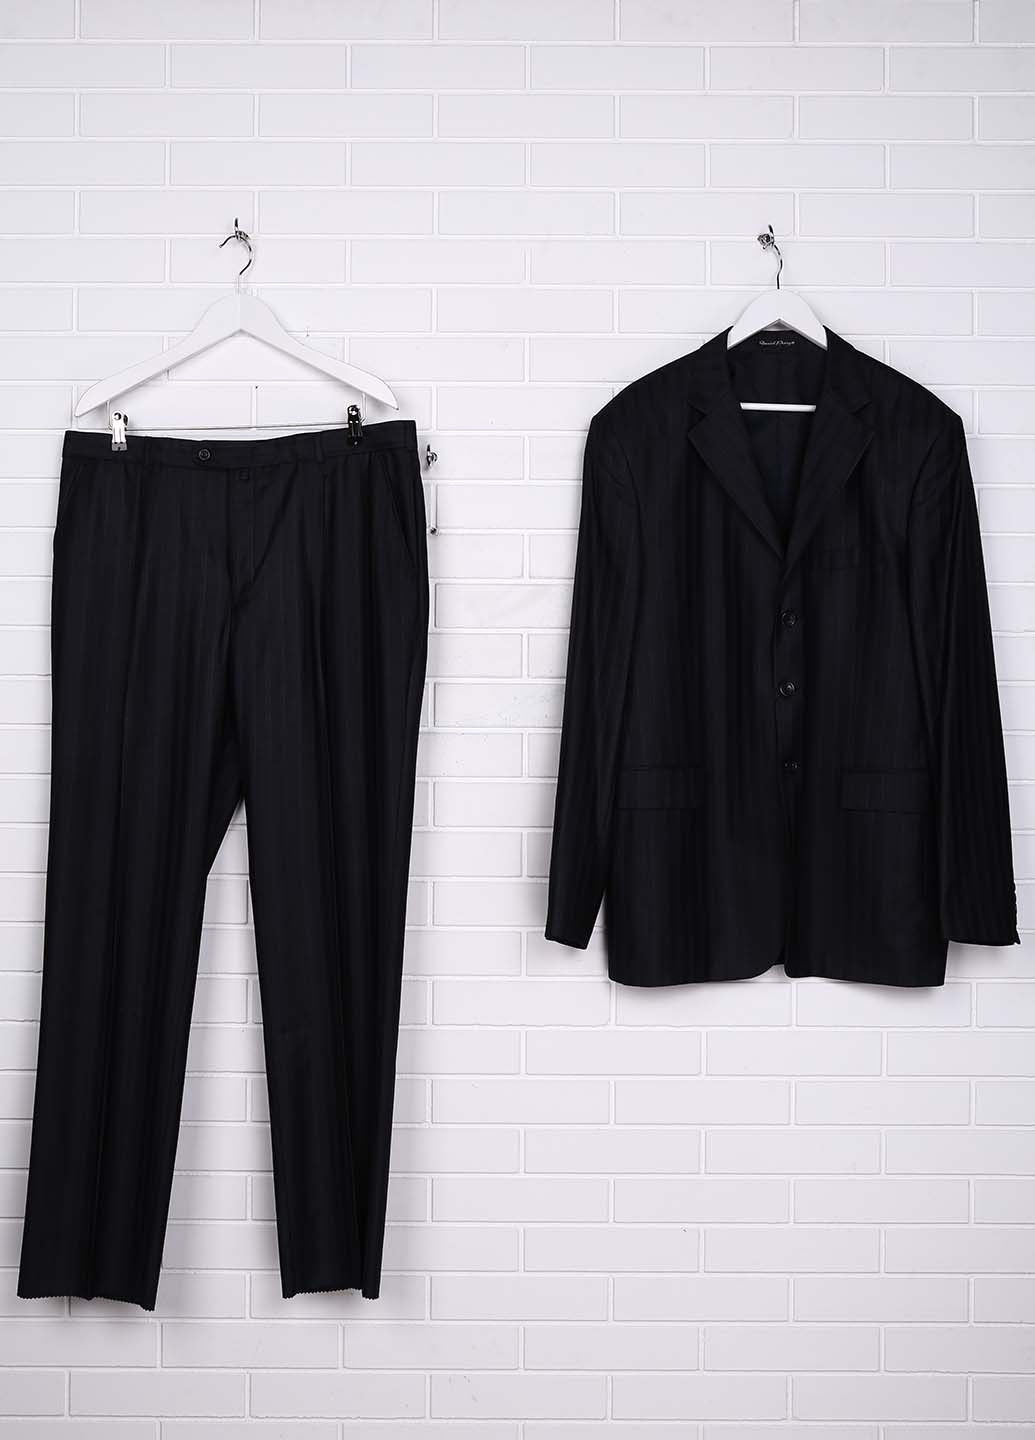 Грифельно-серый демисезонный костюм (пиджак, брюки) брючный DI PIERINO